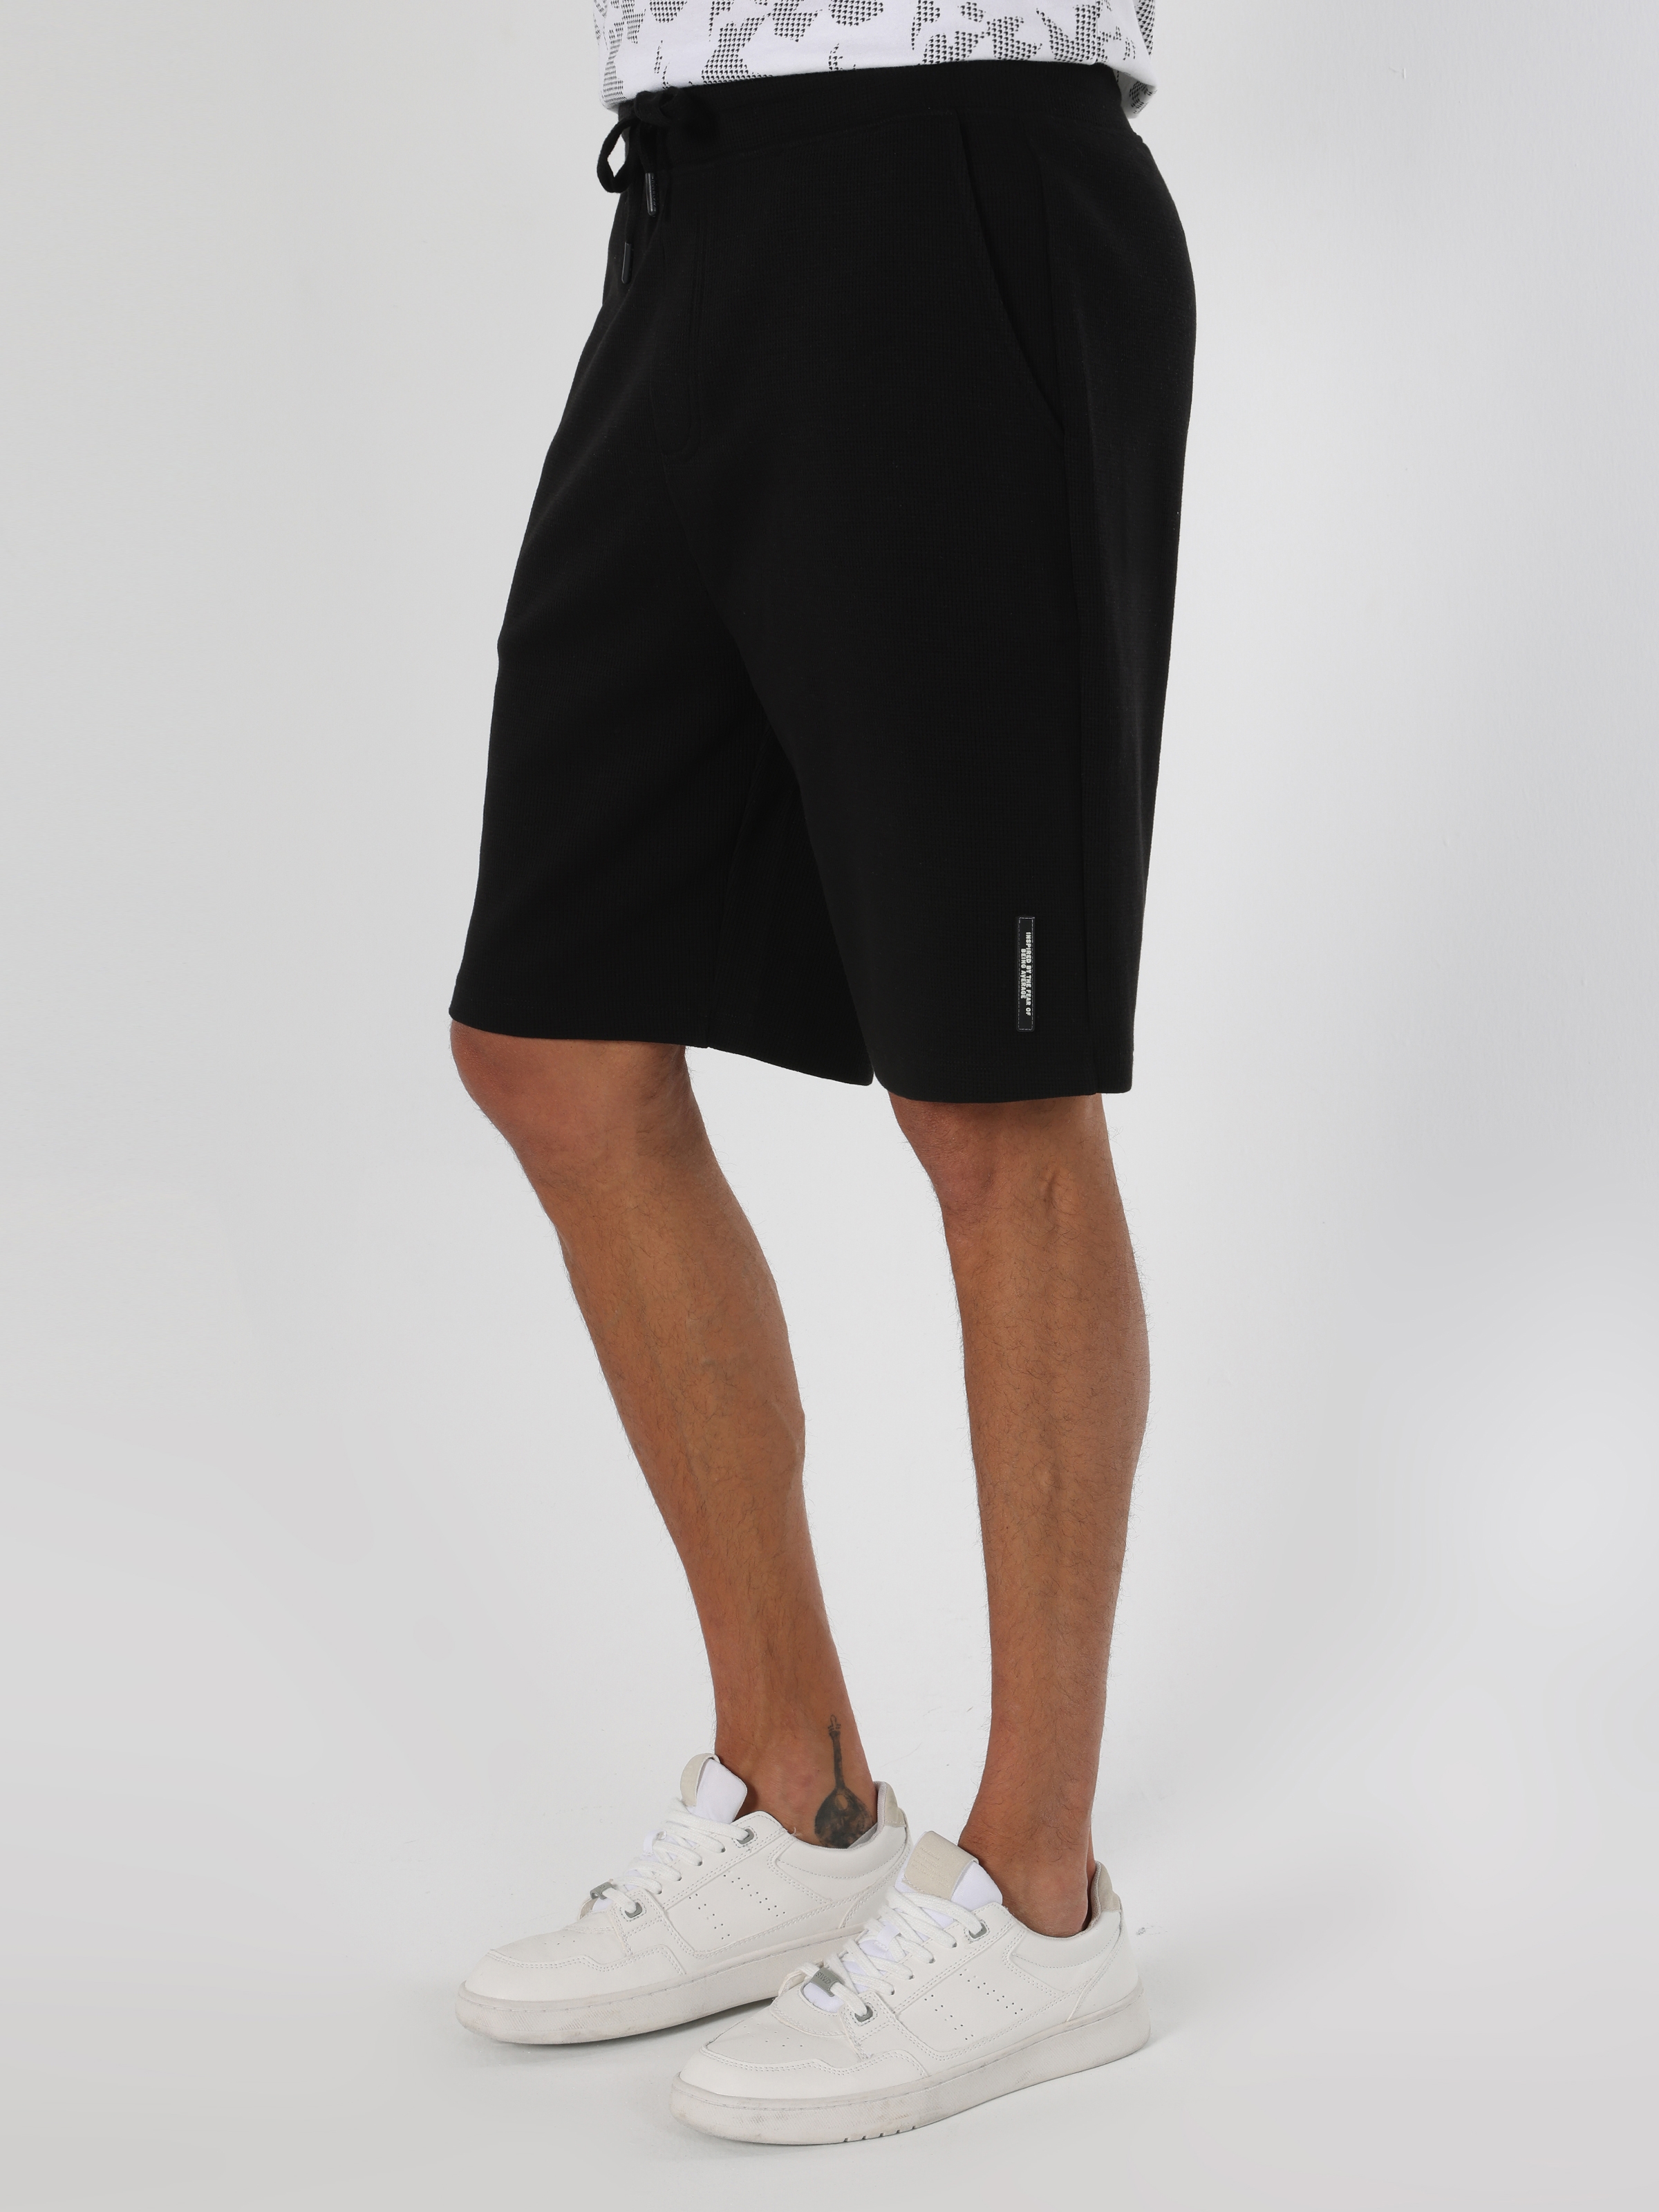 Afișați detalii pentru Short / Pantaloni Scurti De Barbati Negru Regular Fit  CL1064564